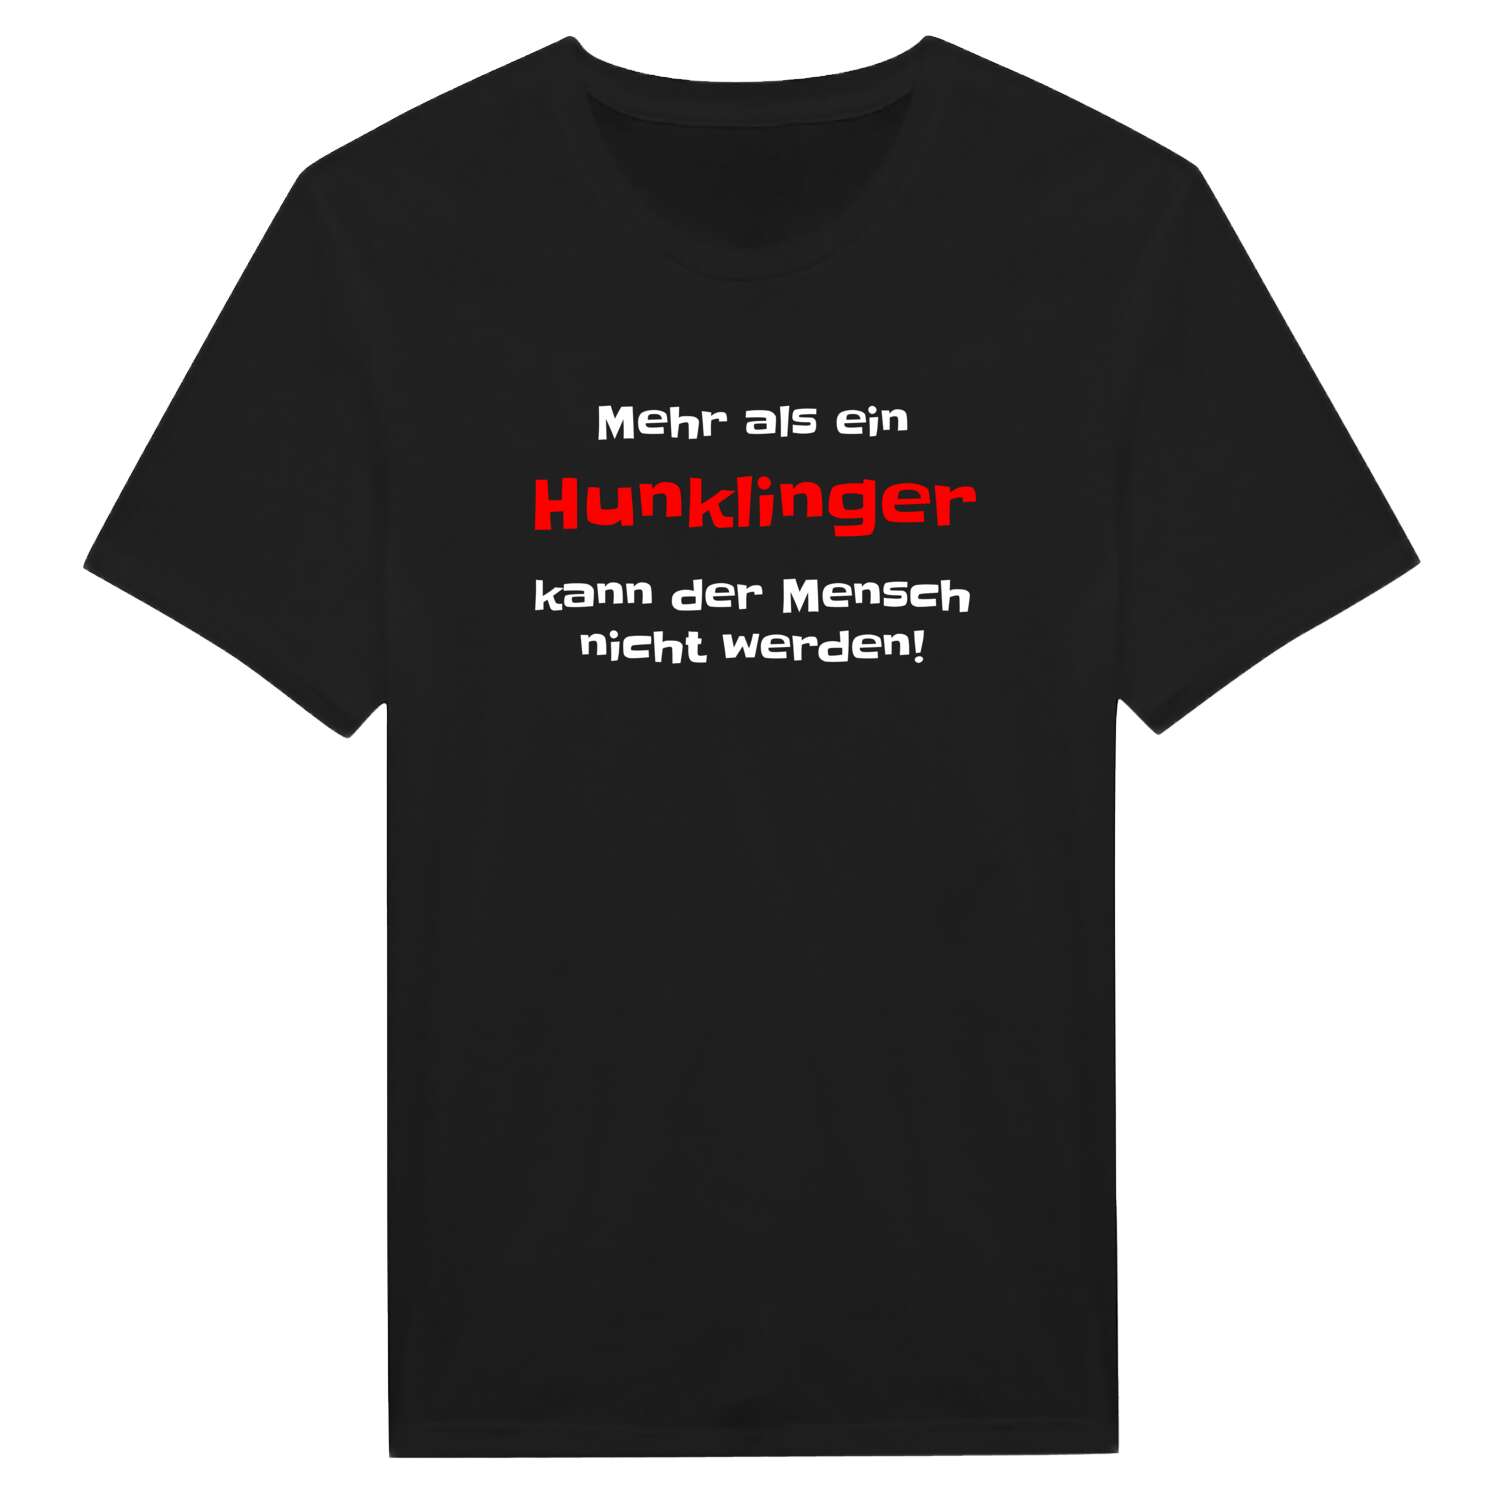 Hunkling T-Shirt »Mehr als ein«